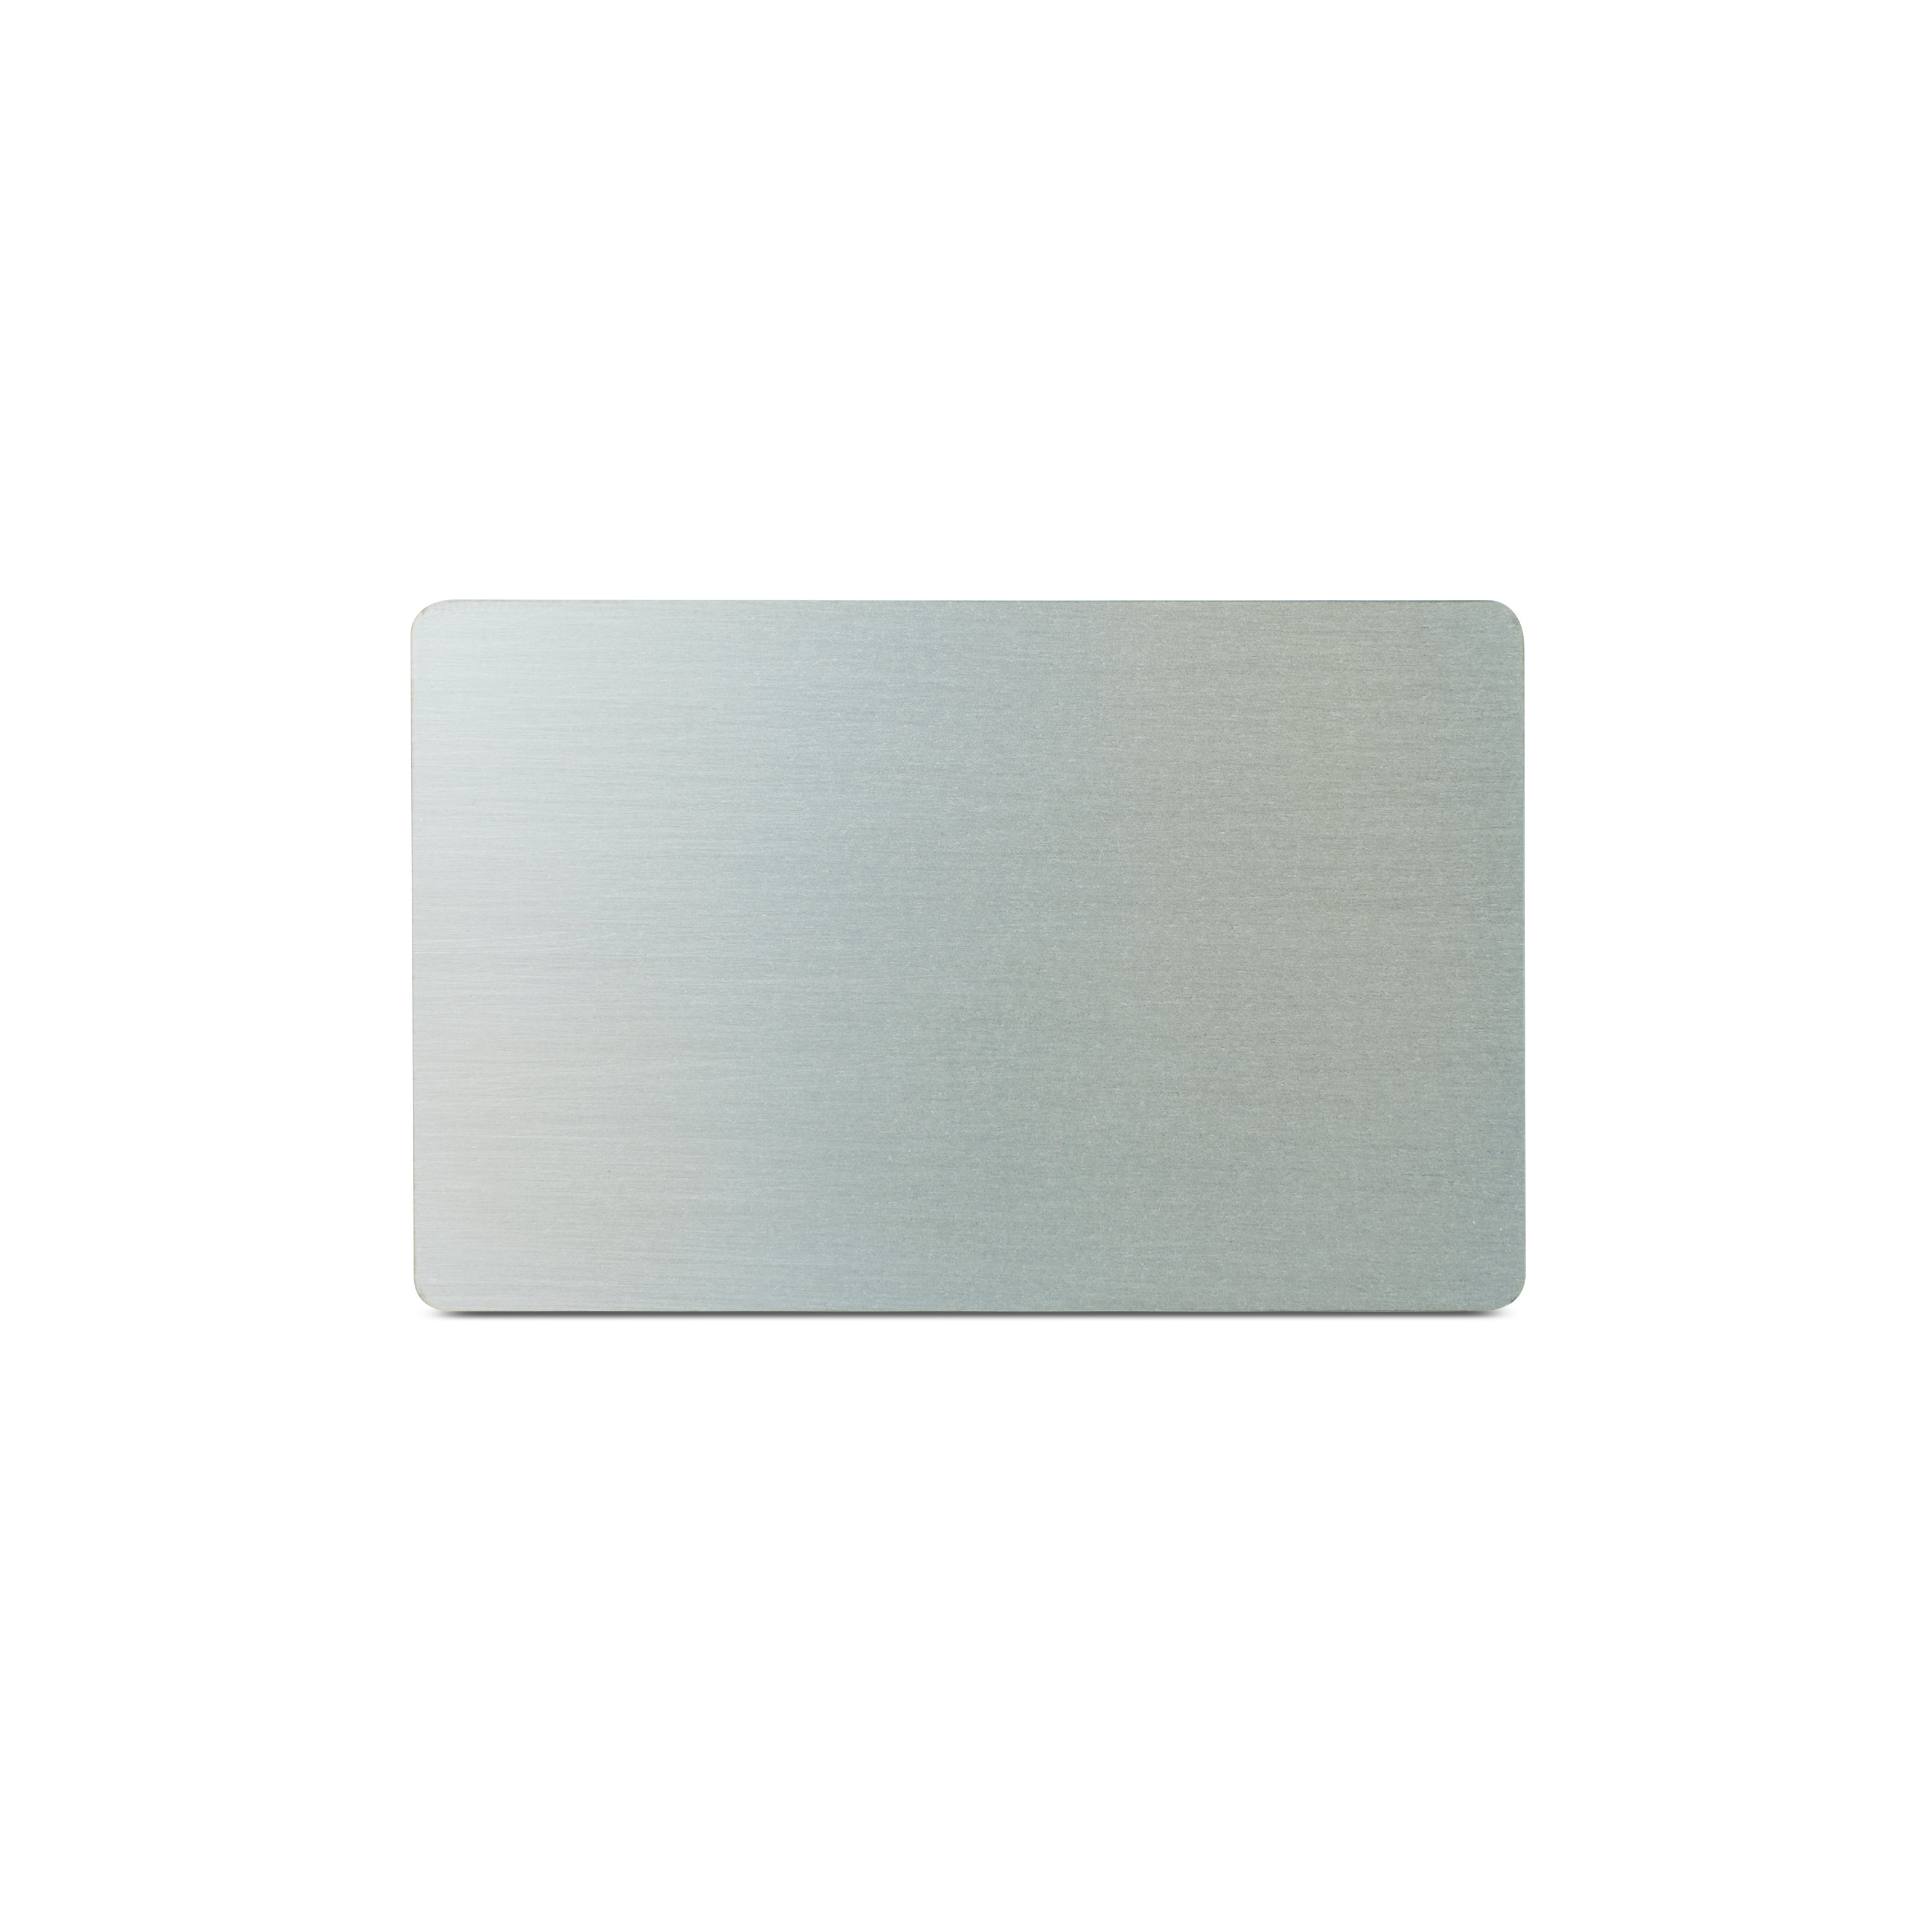 NFC Karte Metall/PVC - 85,6 x 54 mm - NTAG213 - 180 Byte - silber matt - bedruckt